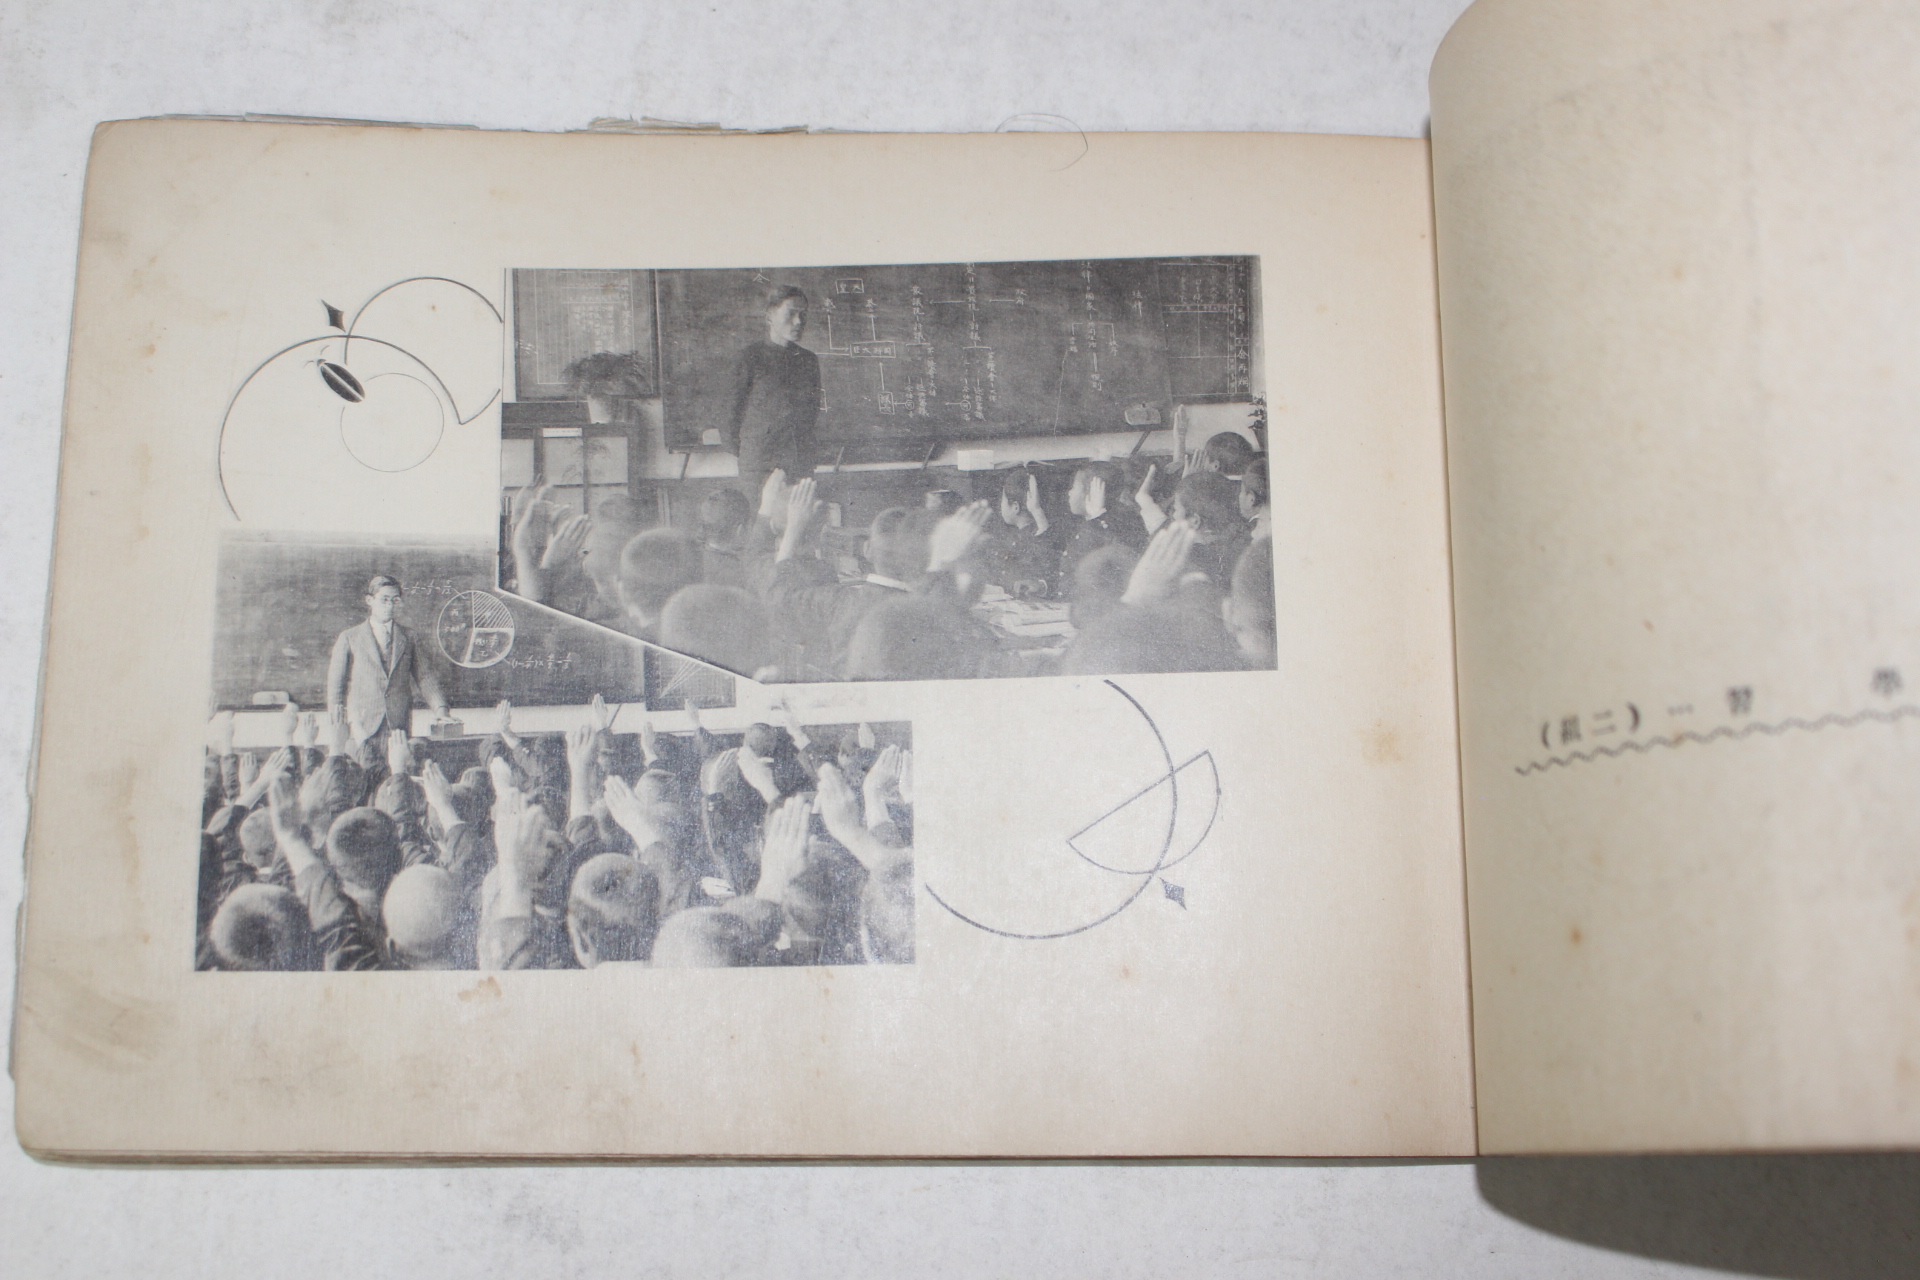 1935년(소화10년) 진주제일공립보통학교 졸업기념사진첩